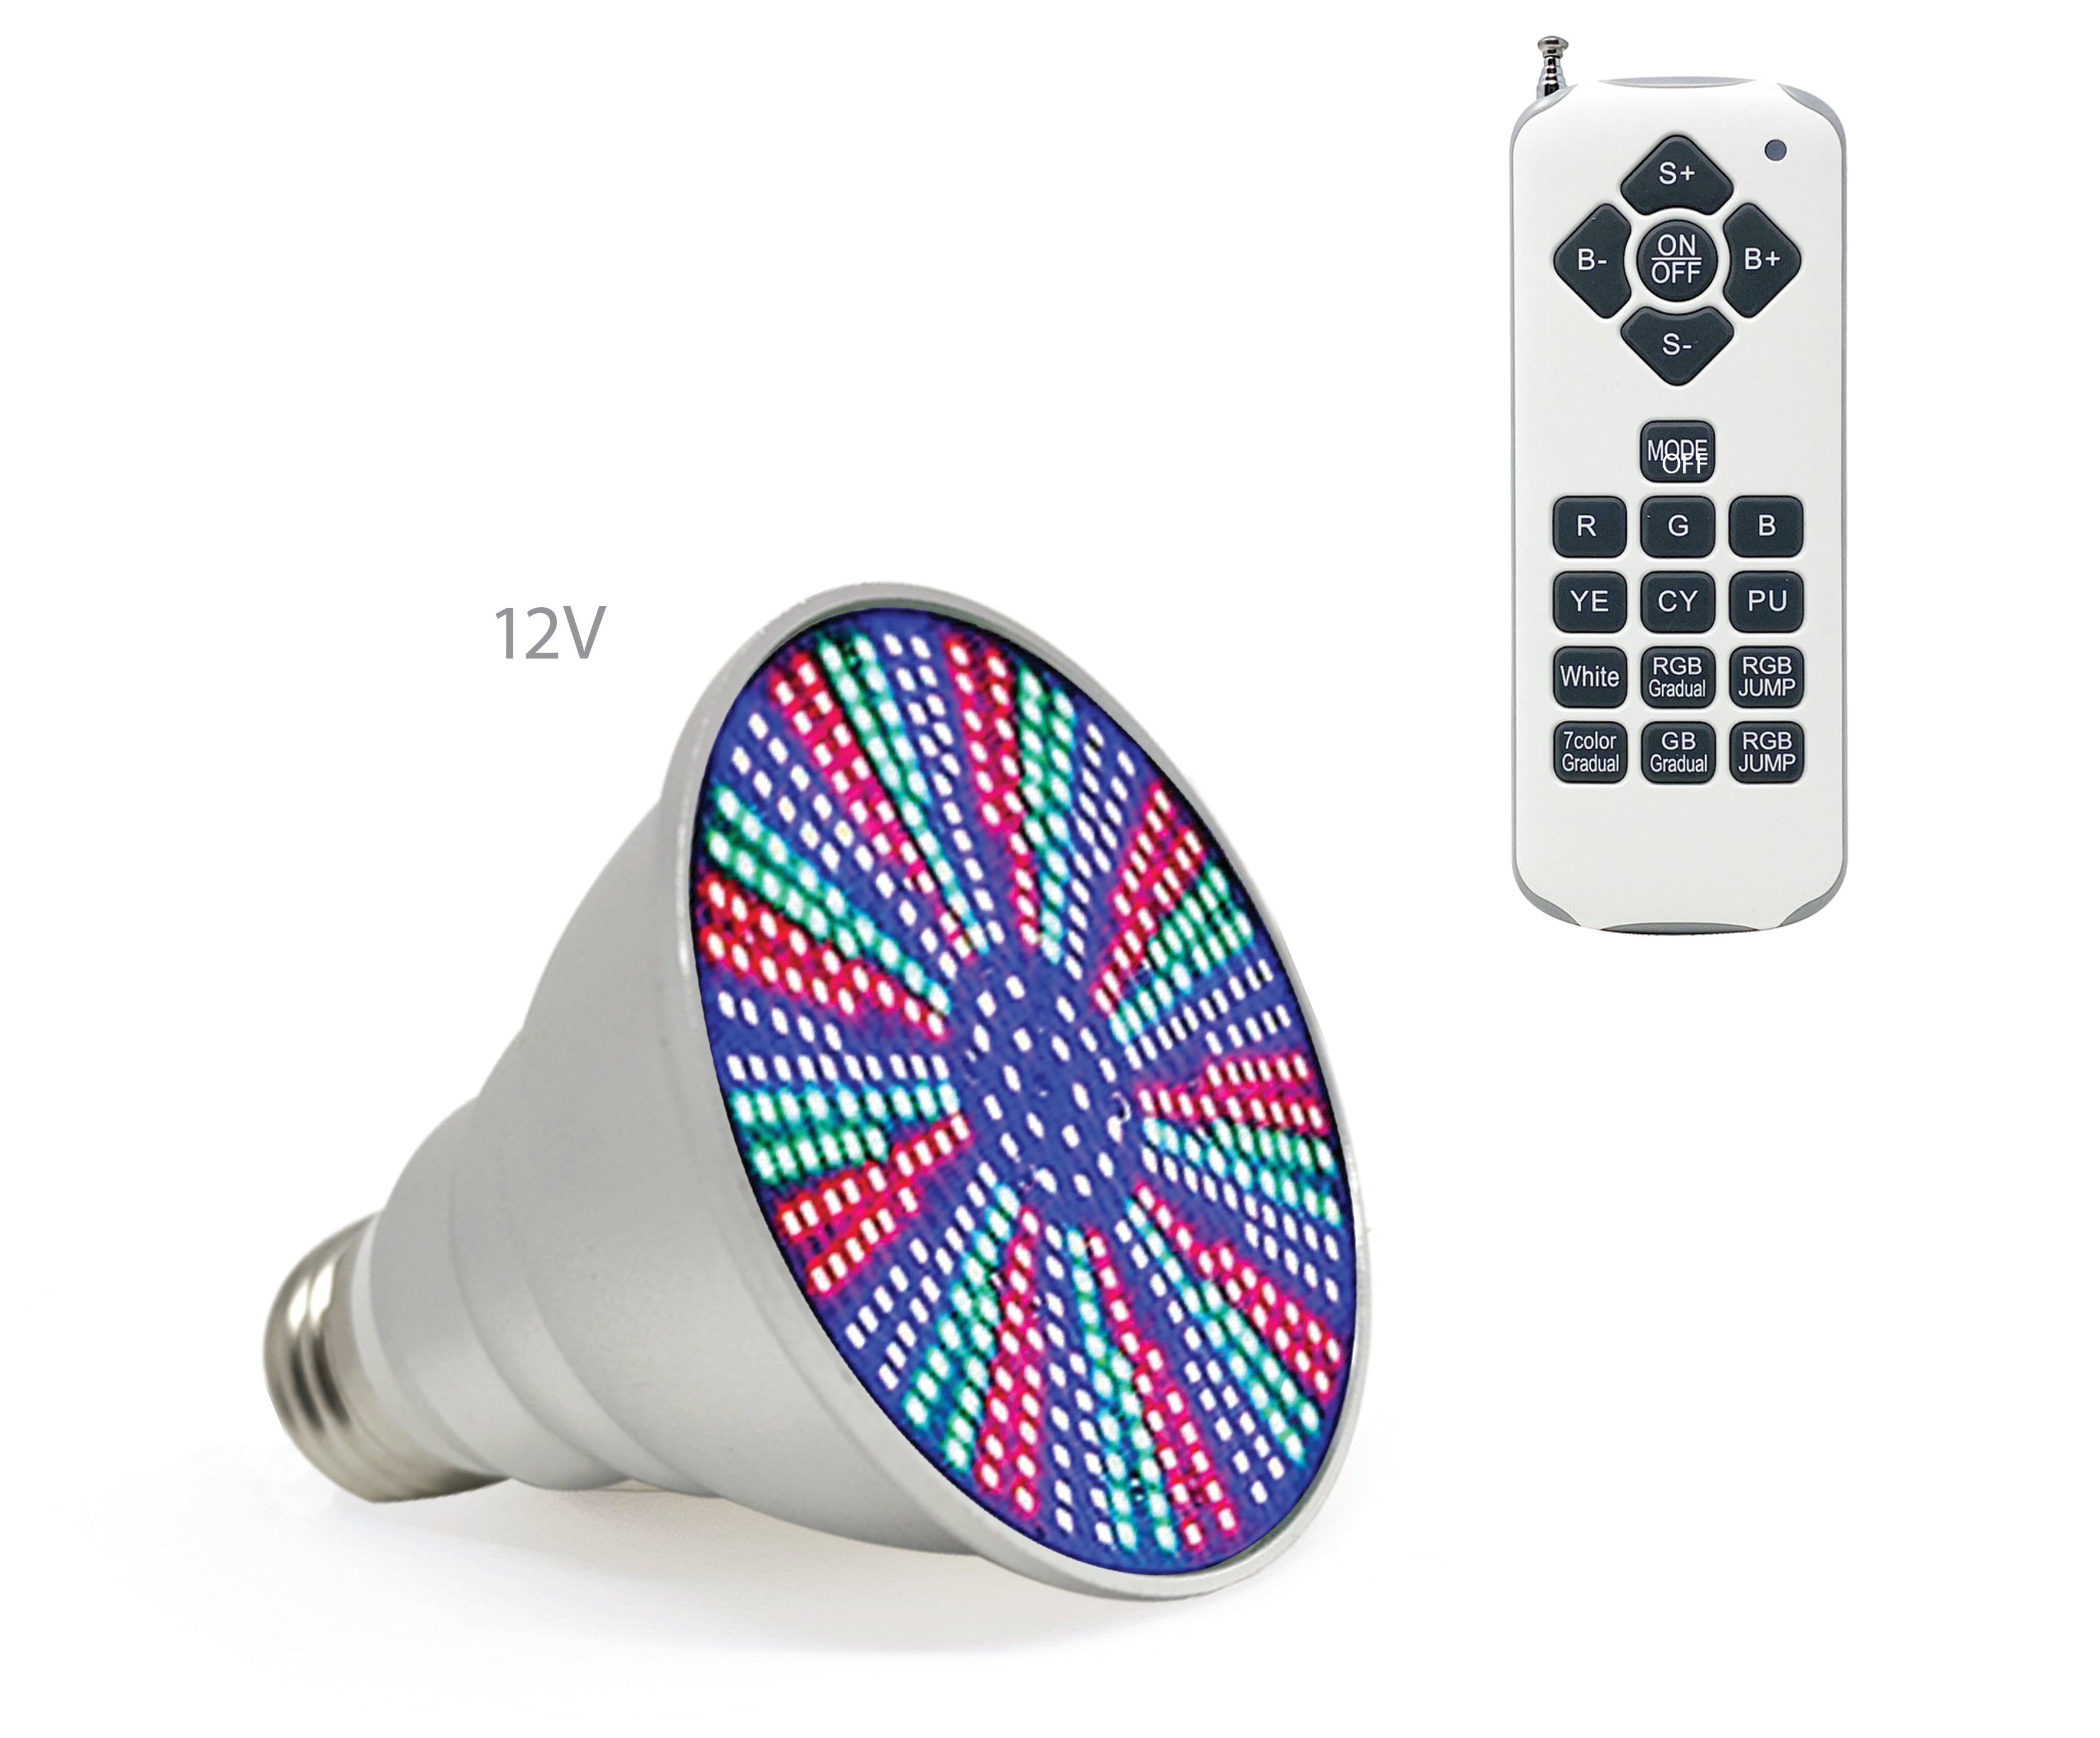 Life-Bulb LED-Glühbirne für Spa, Whirlpool | 12V 10W RGB-W | Lebenslange Ersatzgarantie | Ersatzbirne für Pentair, Hayward und andere Leuchten